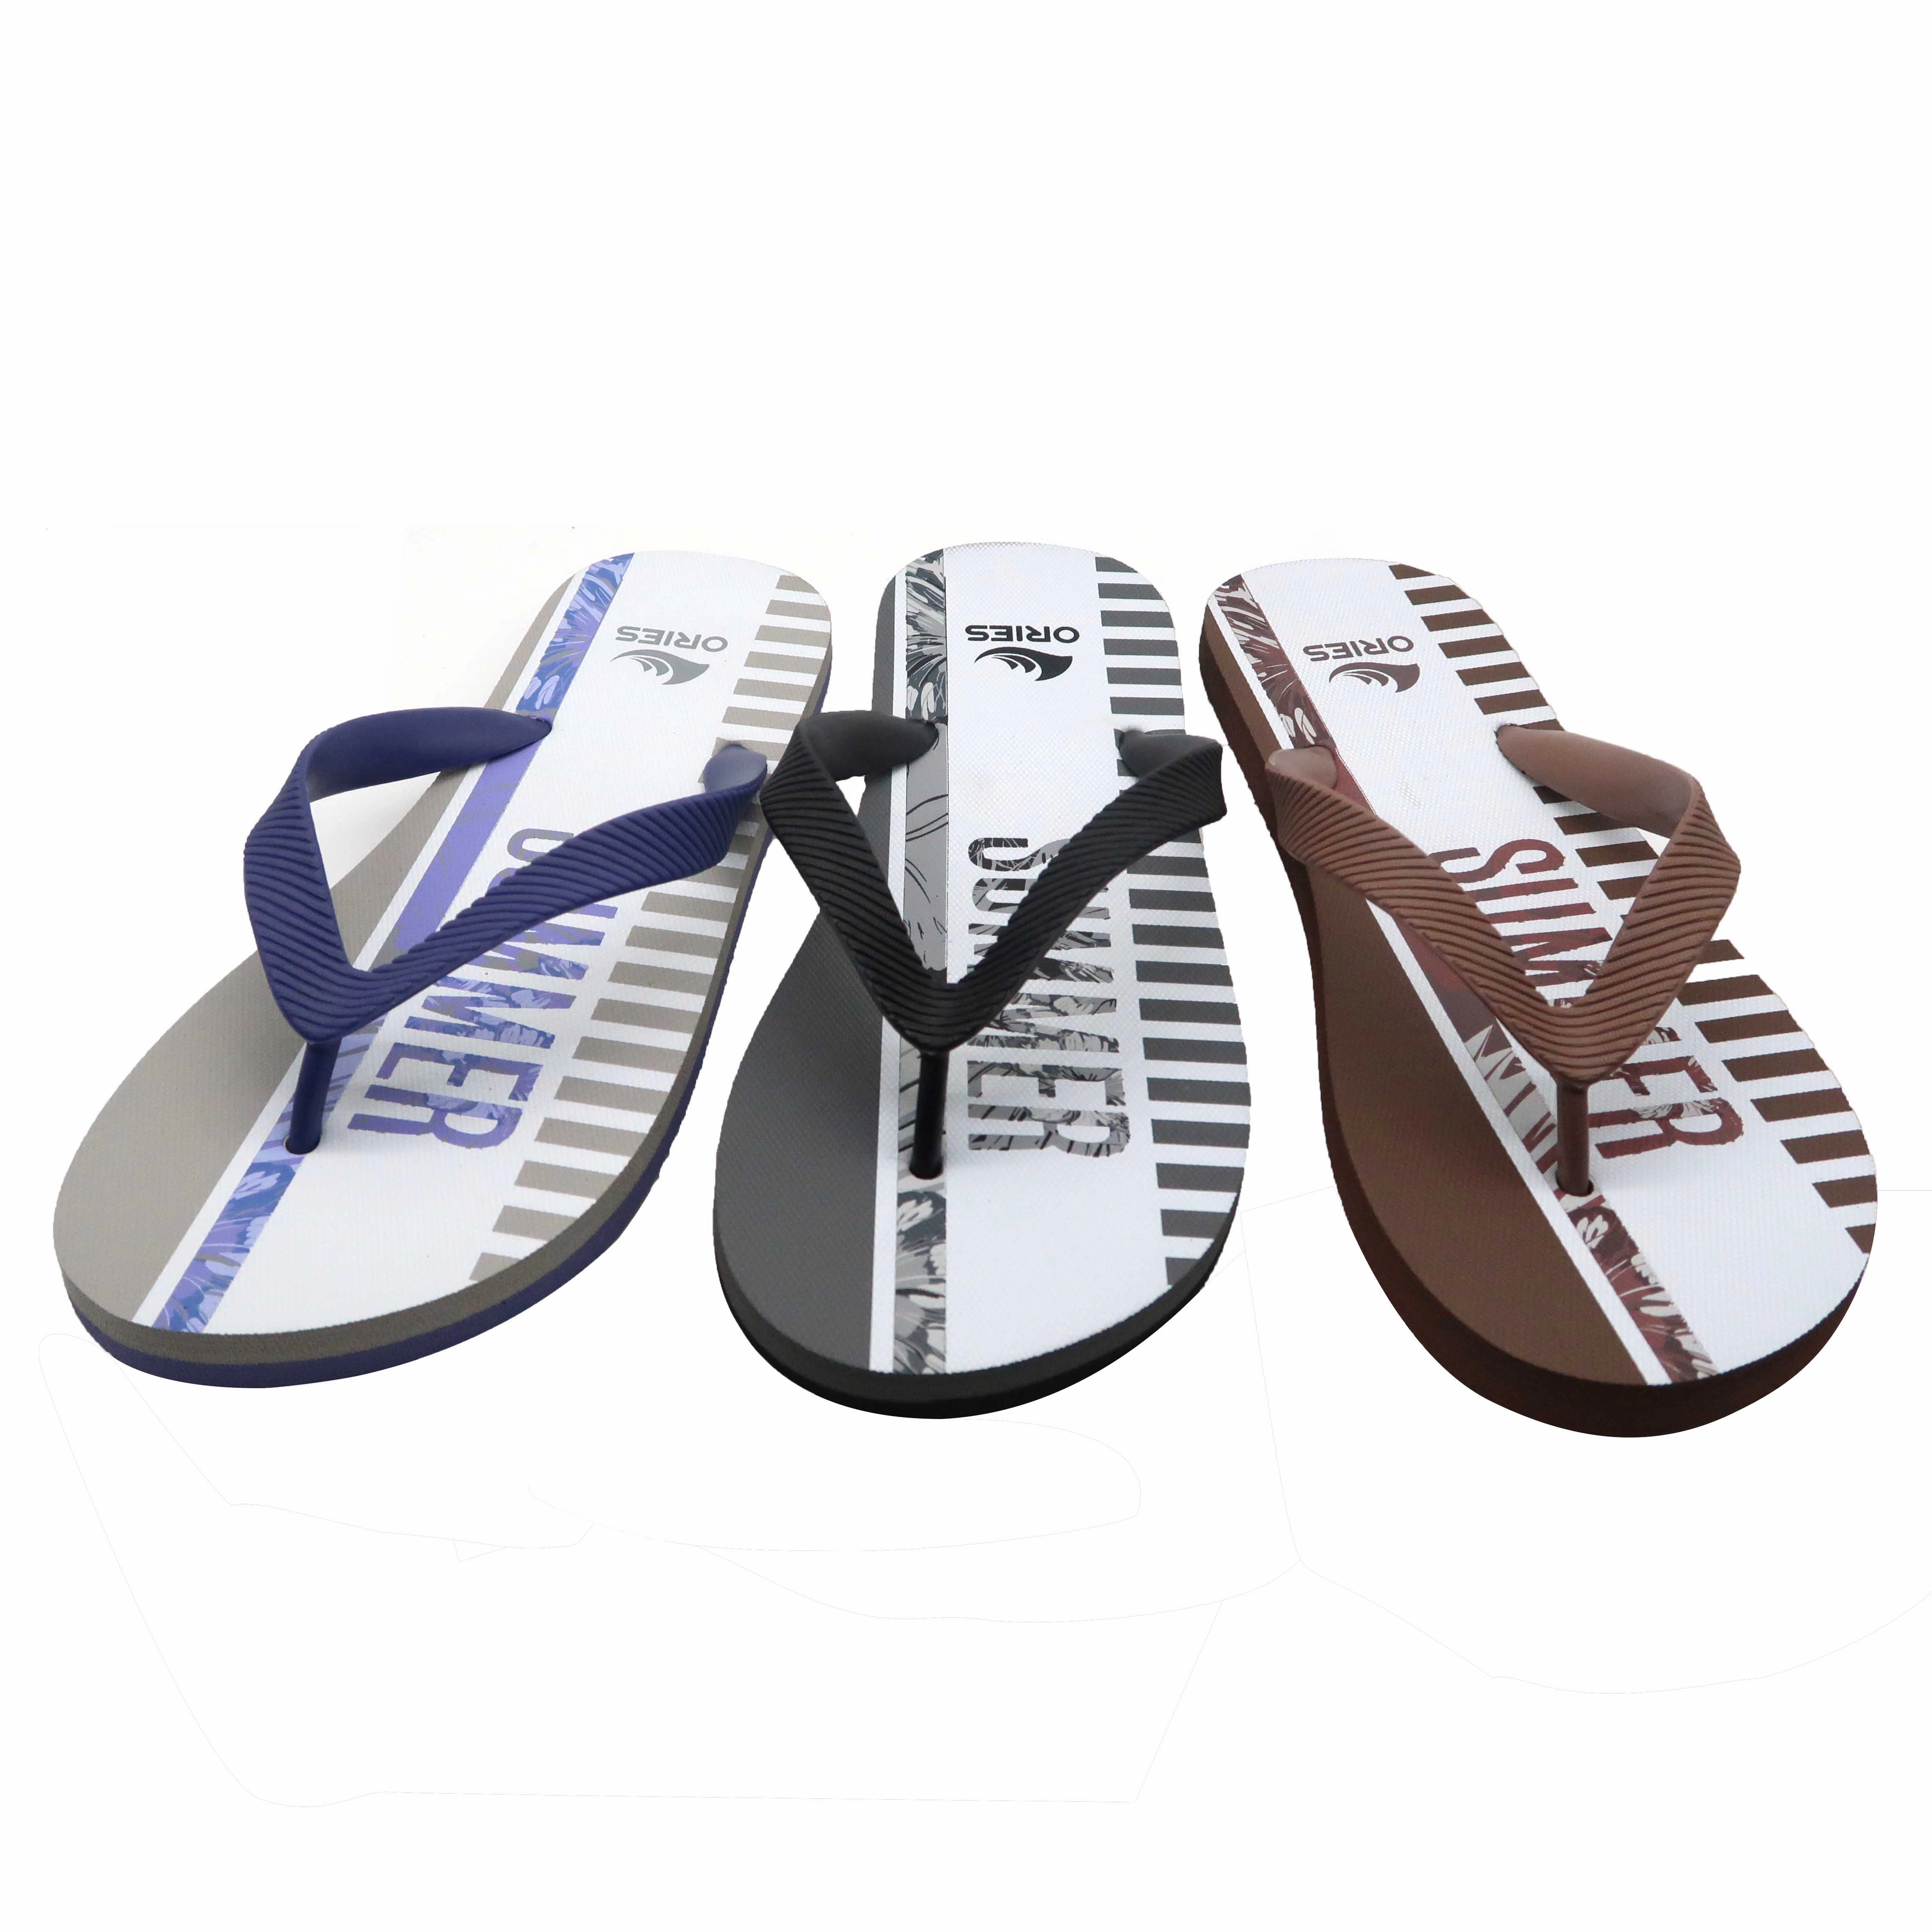 Popular novo design com desconto durável cor roxa sólida masculina barata tamanho grande sandália flipflop de borracha de praia com logotipo